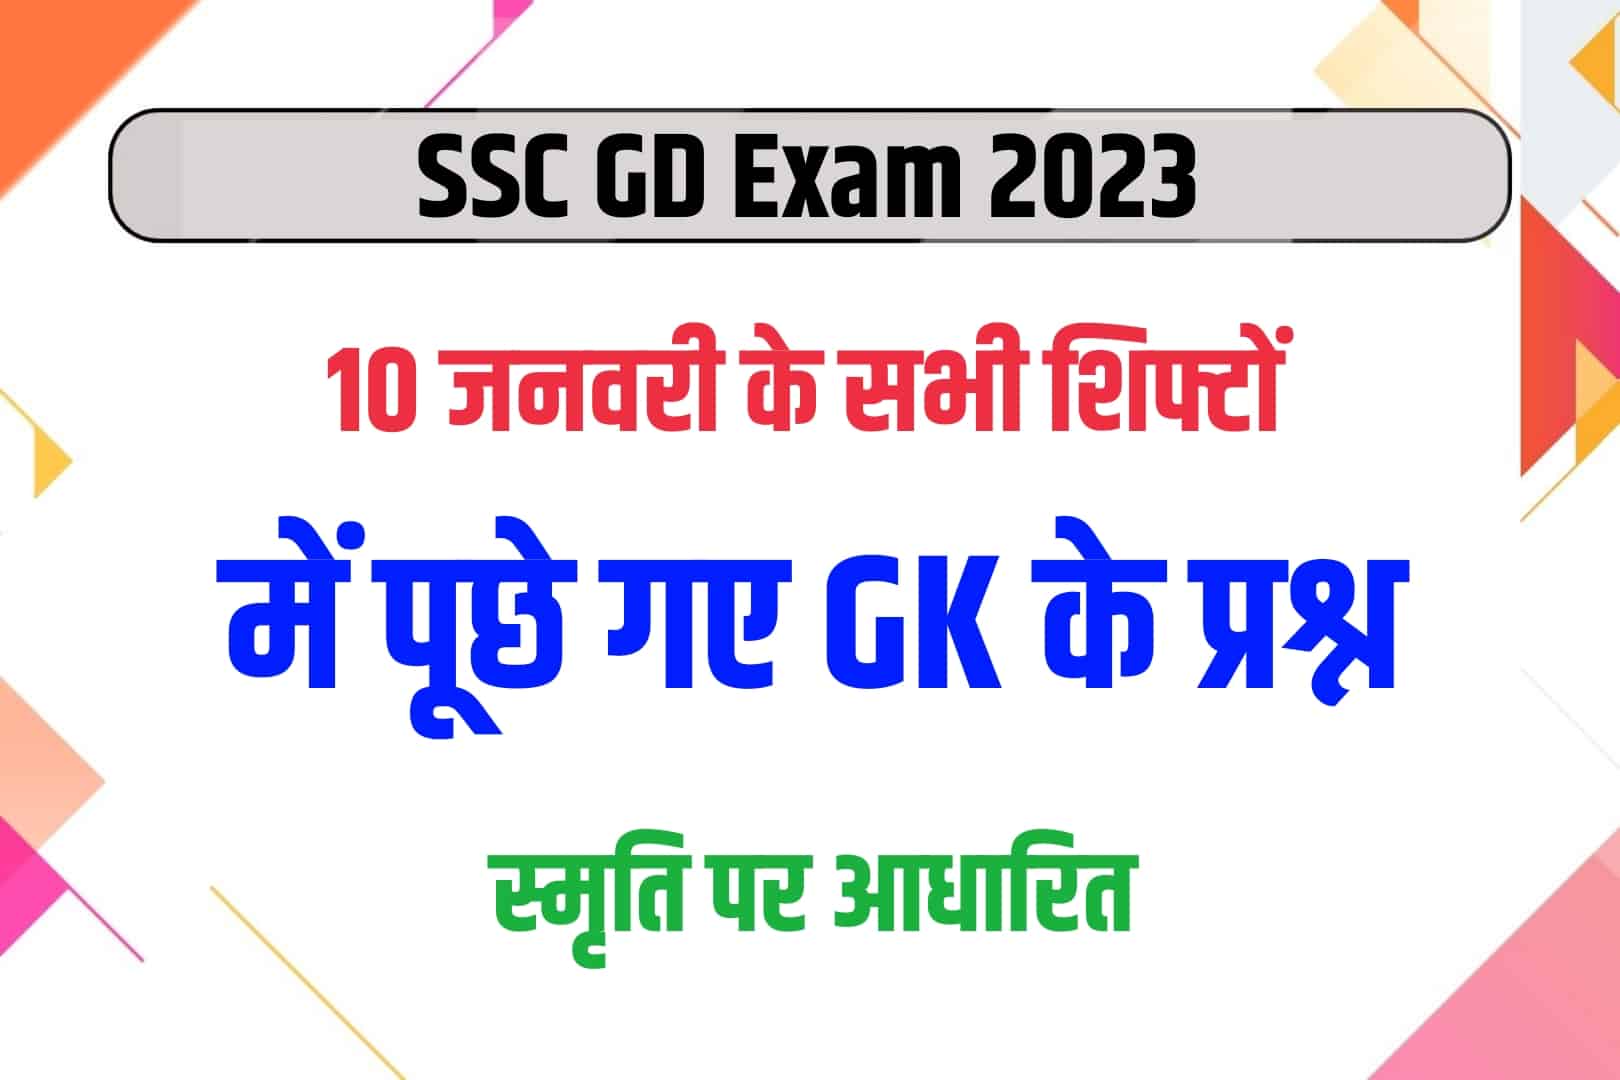 SSC GD Exam 2023 | 10 जनवरी परीक्षा के सभी शिफ्टों में पूछे गए GK के प्रश्न